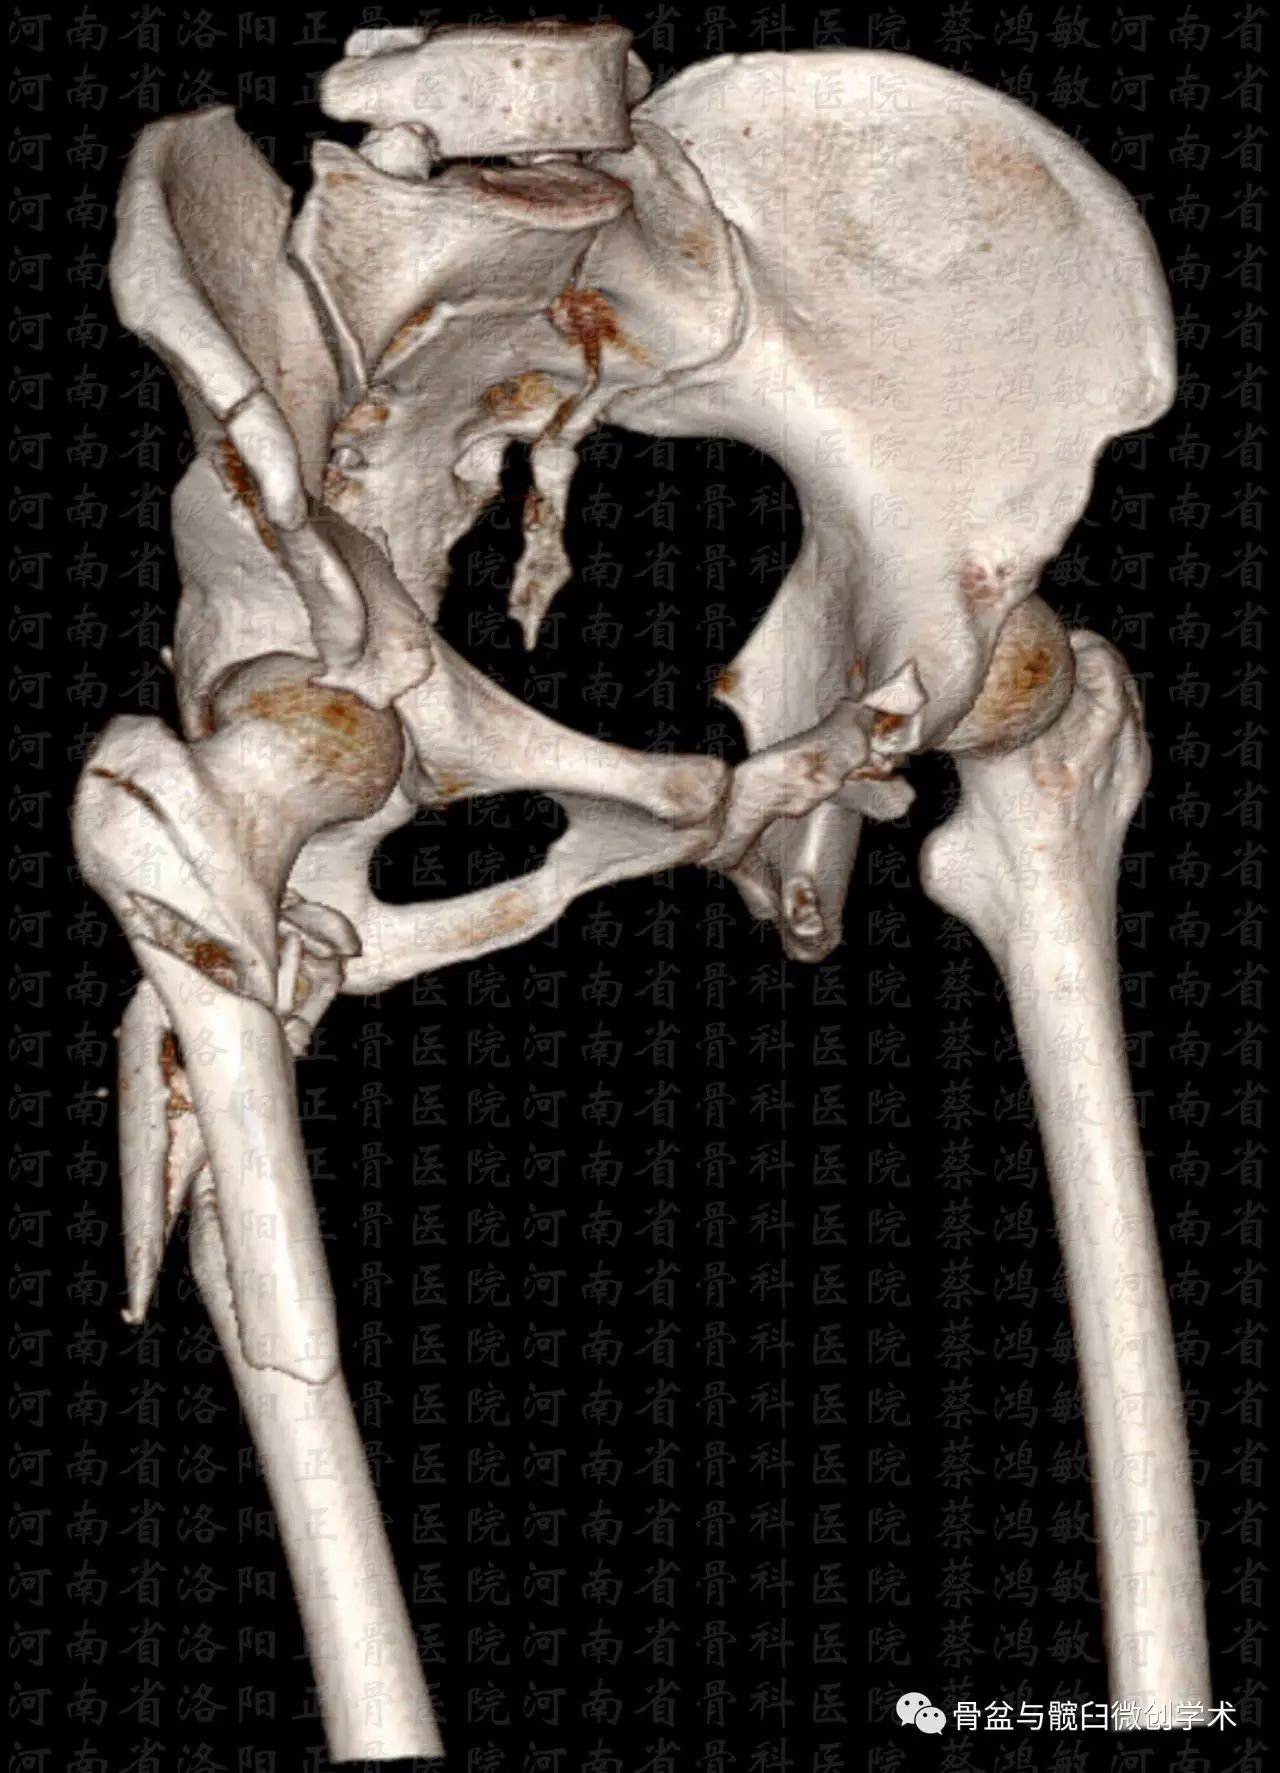 髋臼双柱加后壁骨折合并骨盆垂直不稳定型骨折的治疗